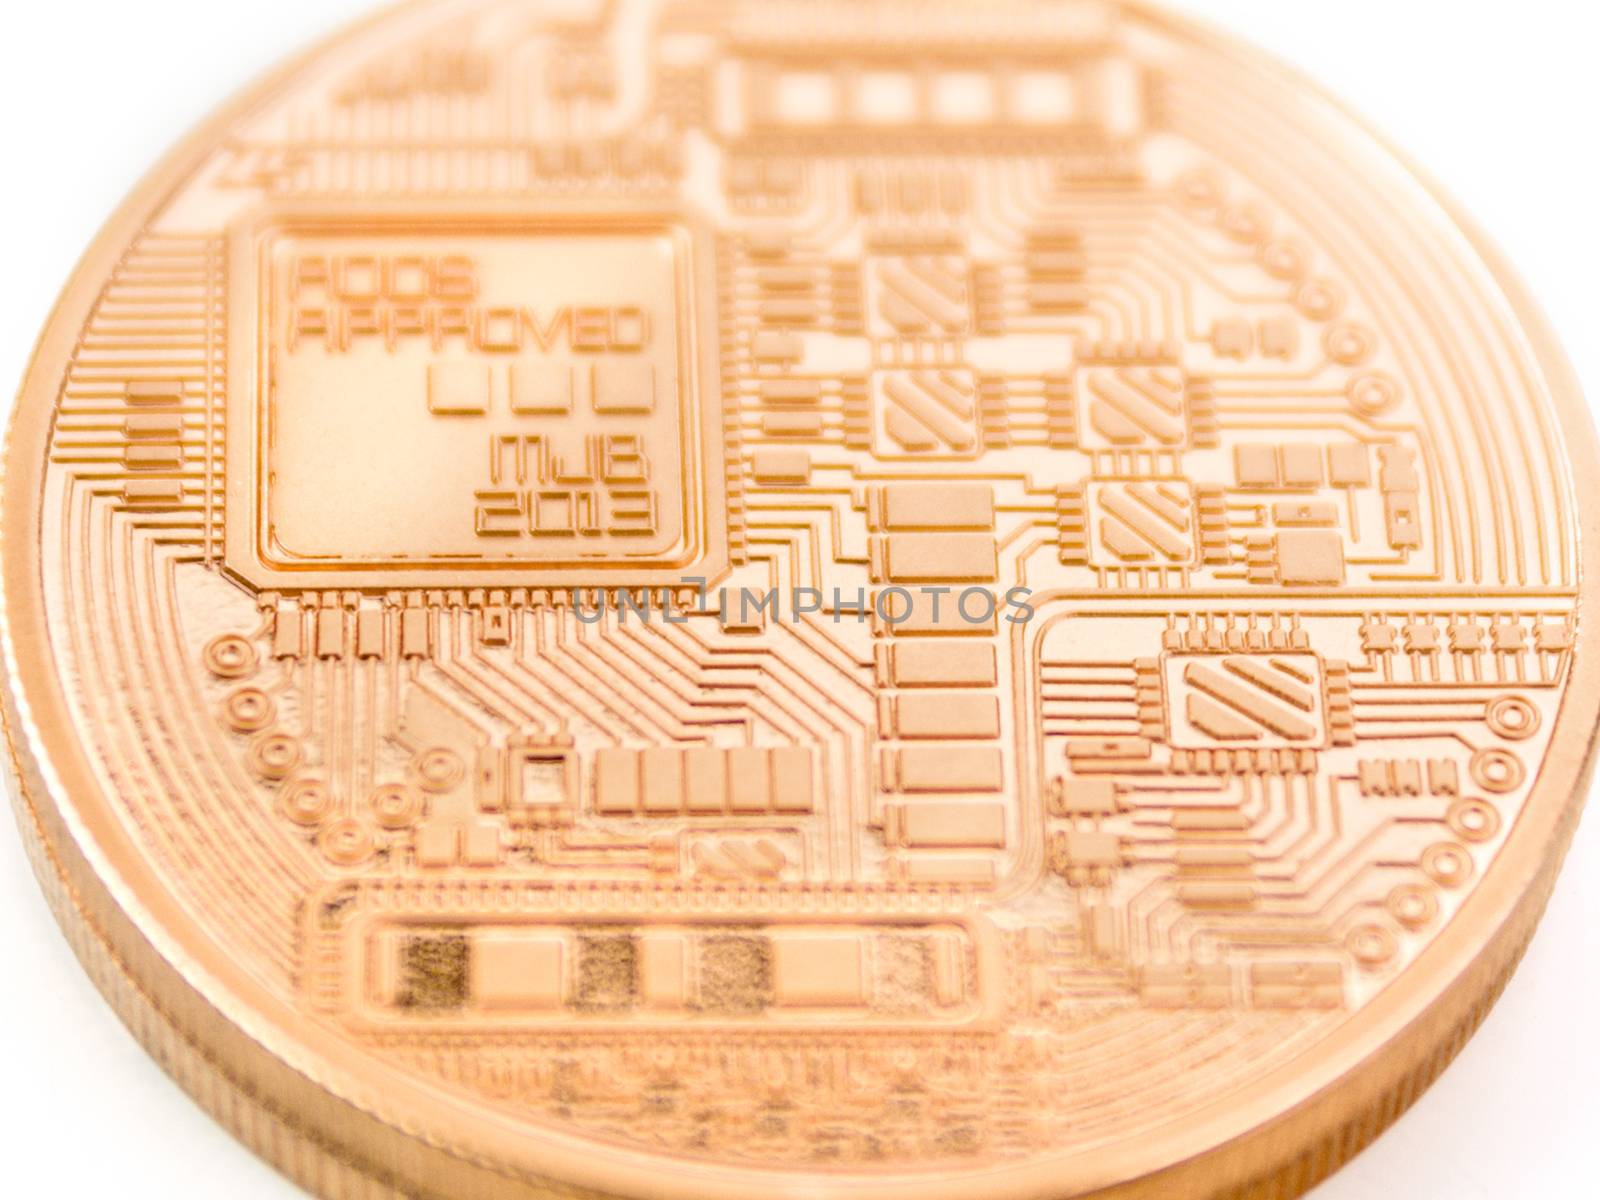 backside of a bitcoin coin - bit coin BTC the new virtual money